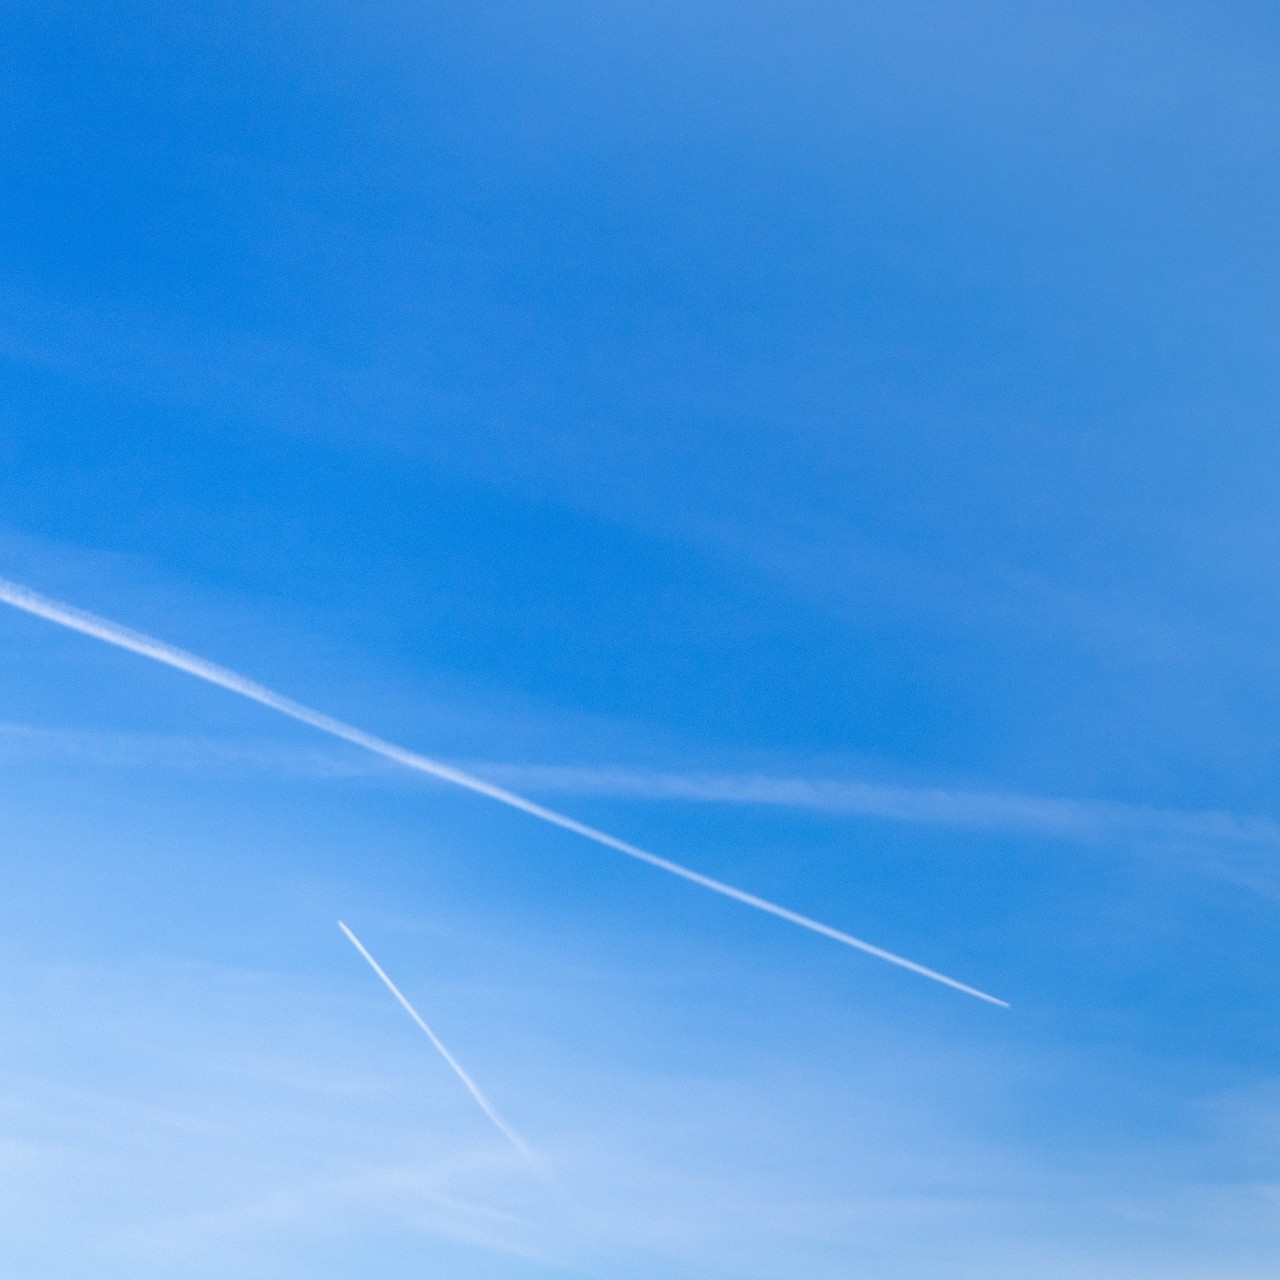 Im Vordergrund Messtelle zu sehen, im Hintergrund blauer Himmel mit Flugzeug-Spuren